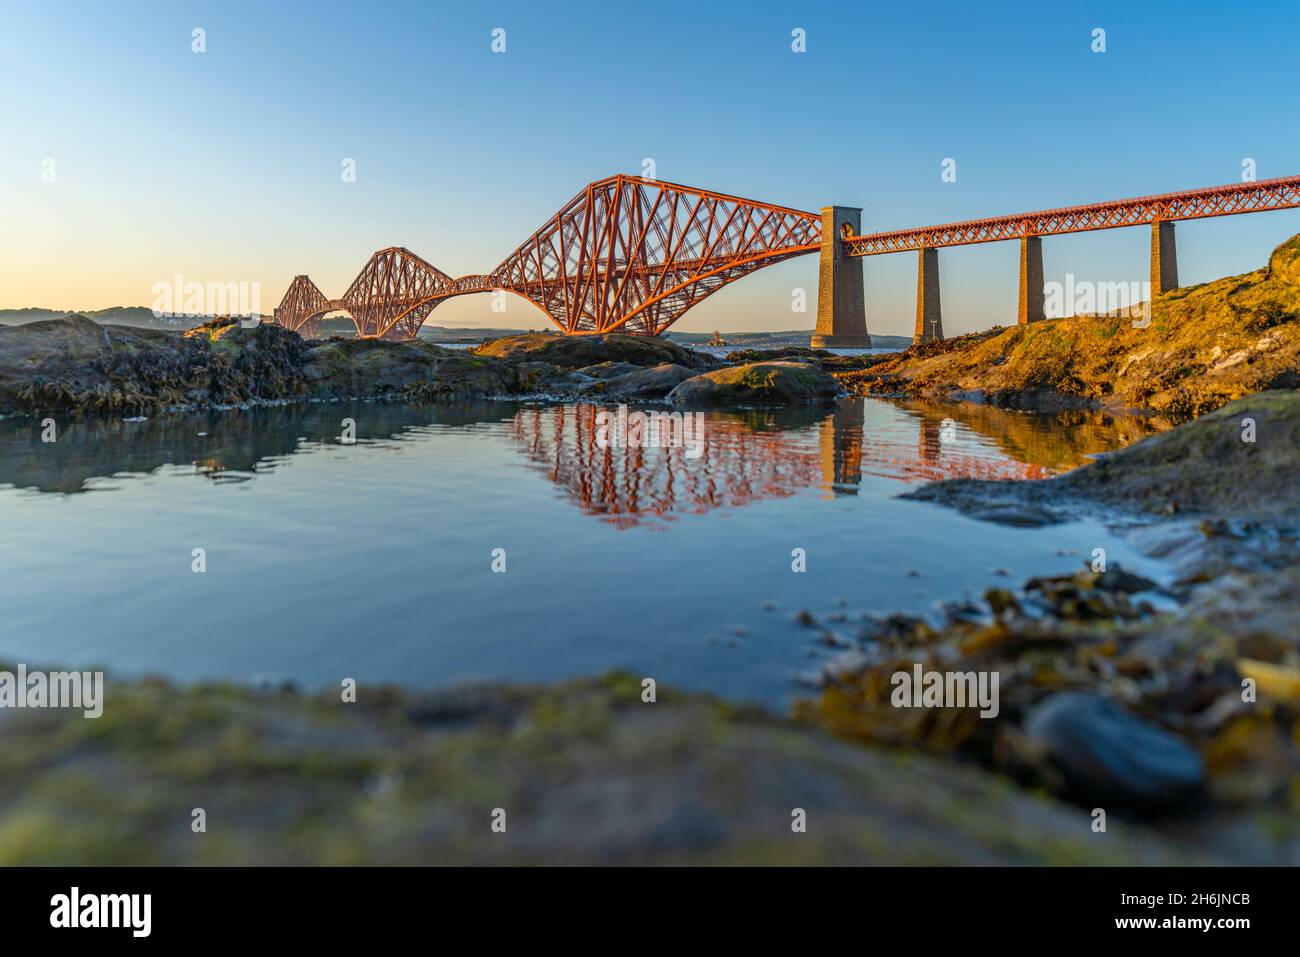 Vista del Forth Rail Bridge, sito patrimonio dell'umanità dell'UNESCO, sul Firth of Forth, South Queensferry, Edimburgo, Lothian, Scozia, Regno Unito Foto Stock